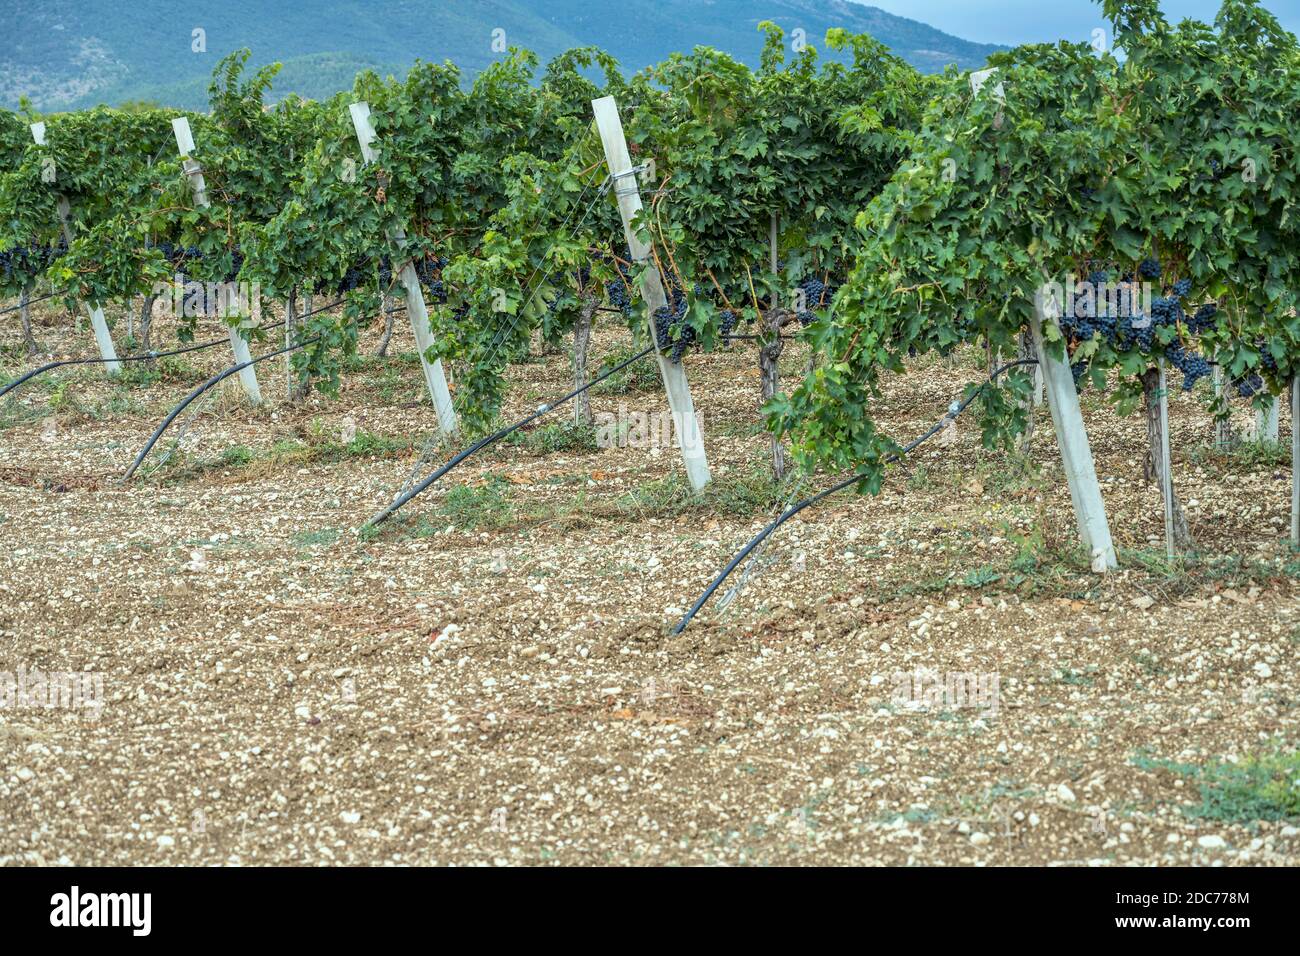 Filari di vite con molti grappoli di uva nera maturi in vigna nei pressi di Raiano, l'Aquila, Abruzzo, Italia Foto Stock